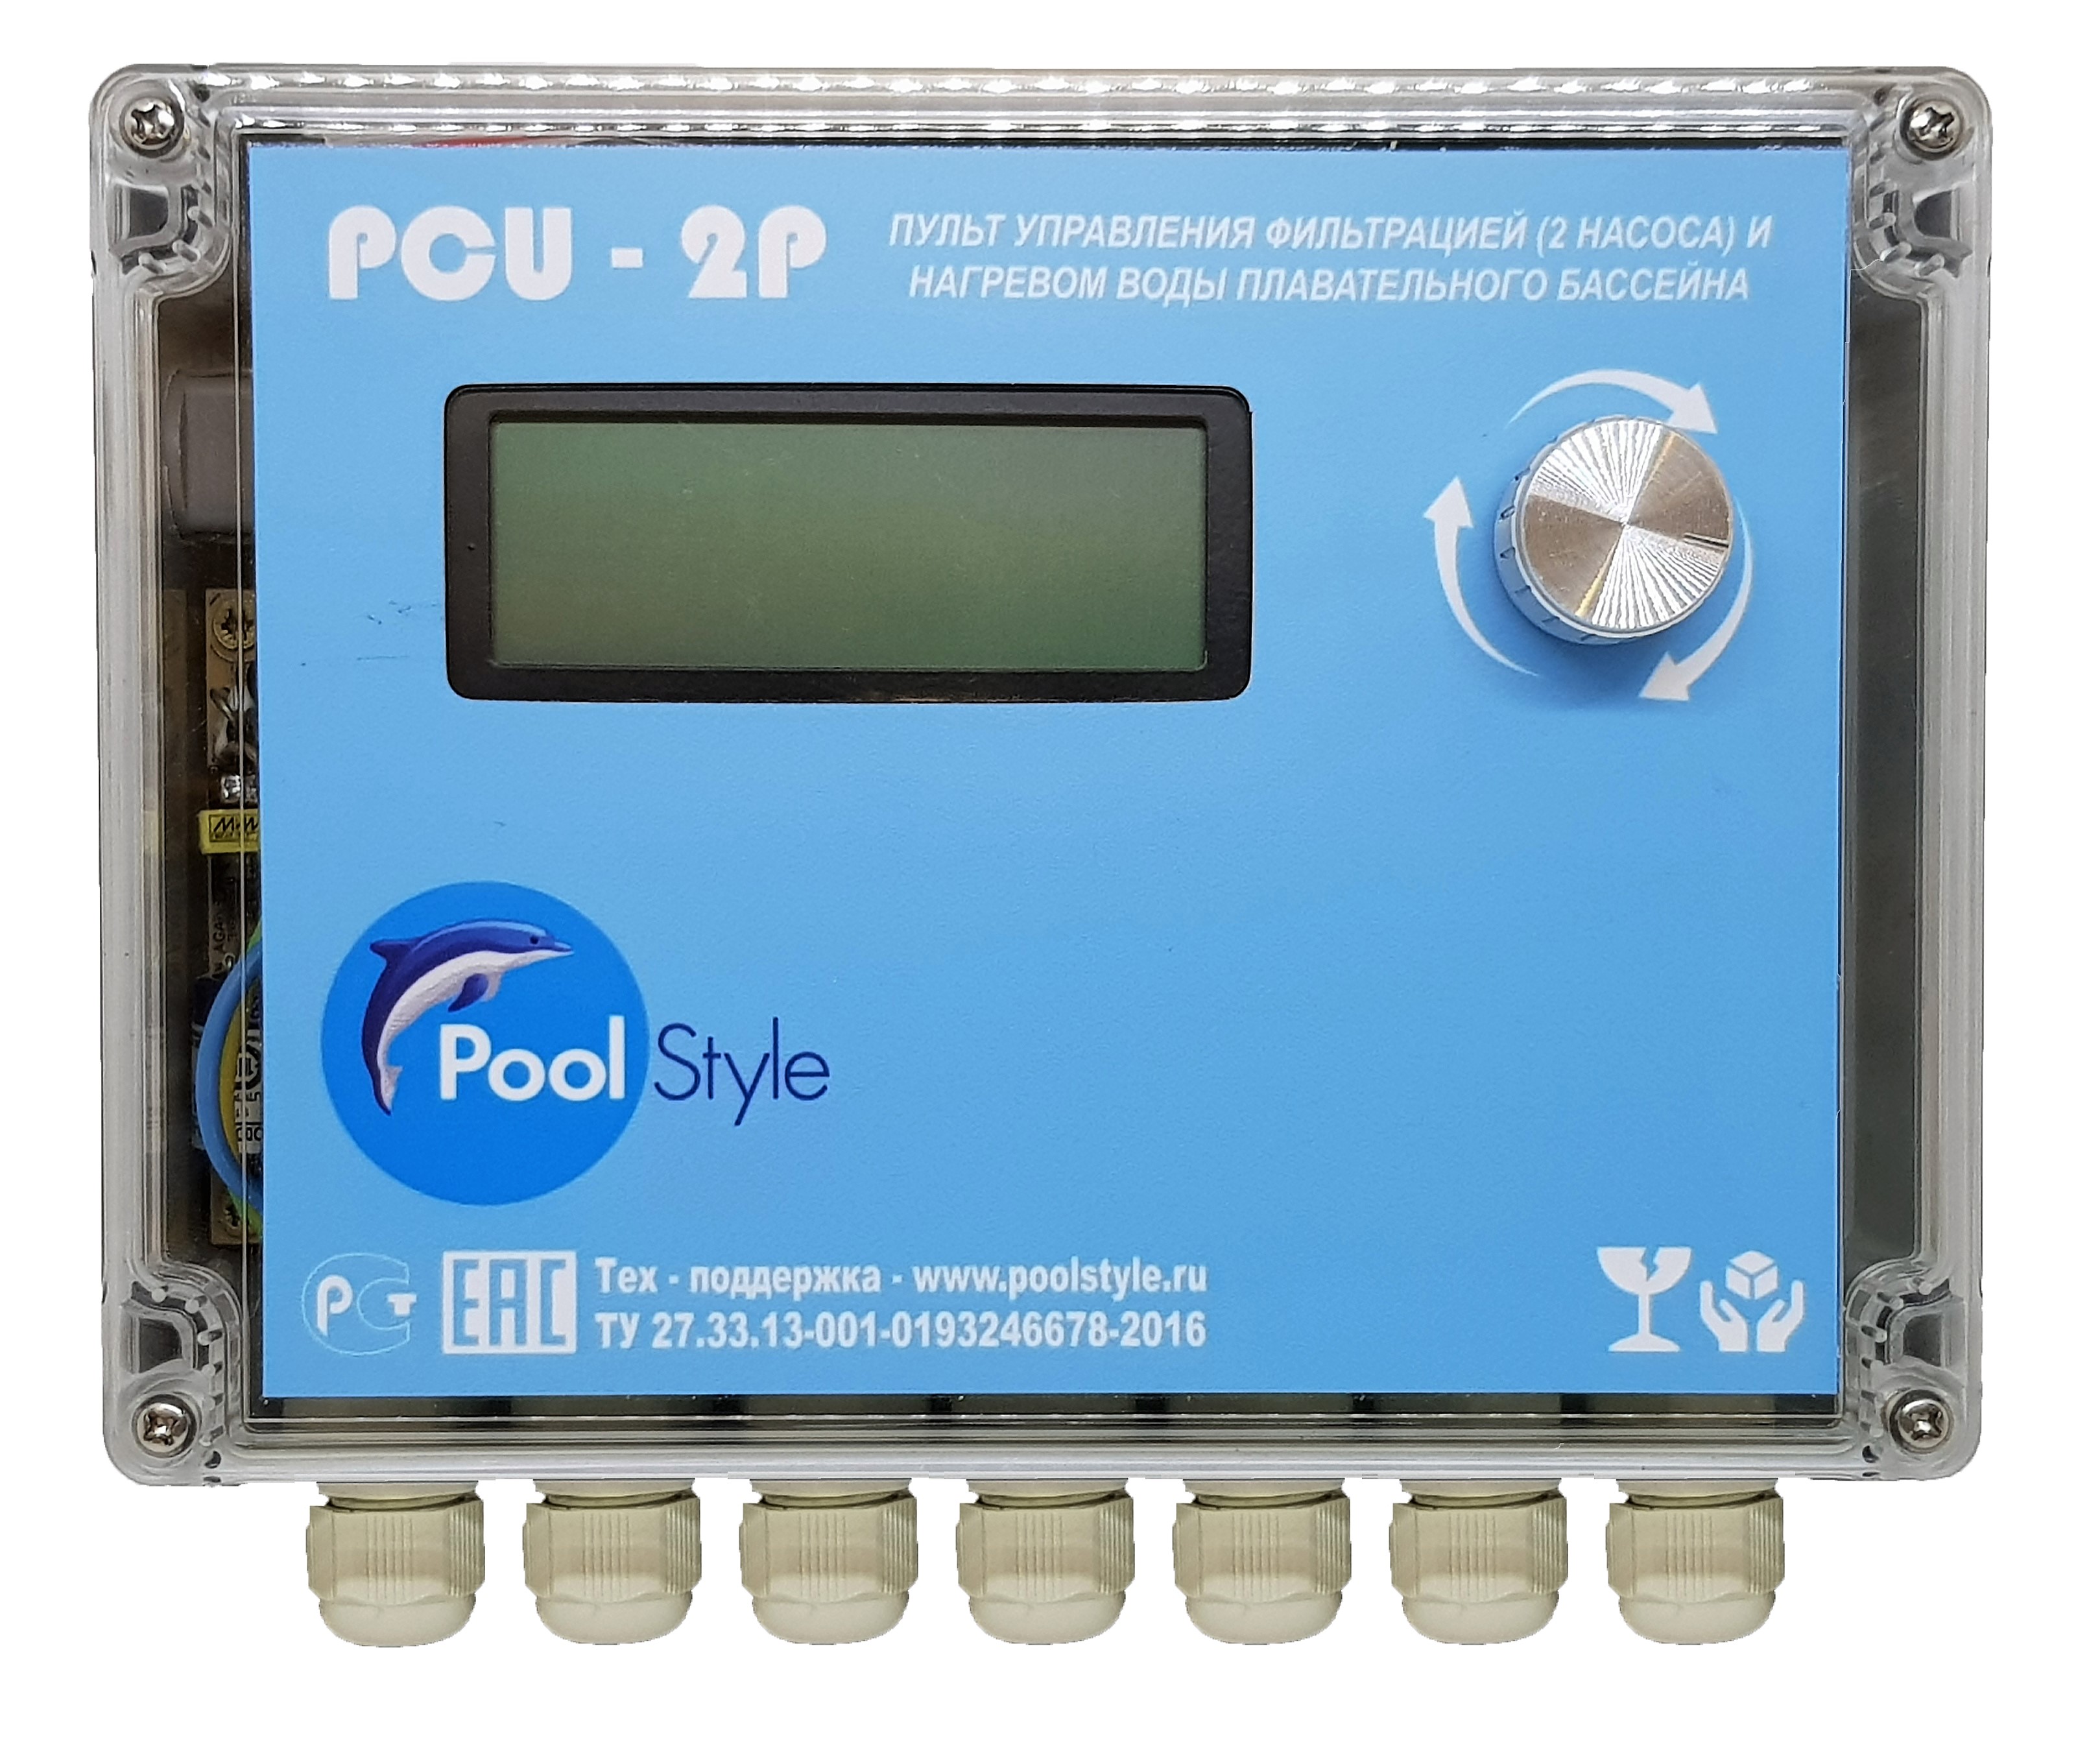 Пульт автоматического управления фильтрацией (2 насоса) и нагревом воды плавательного бассейна «PCU-2P»